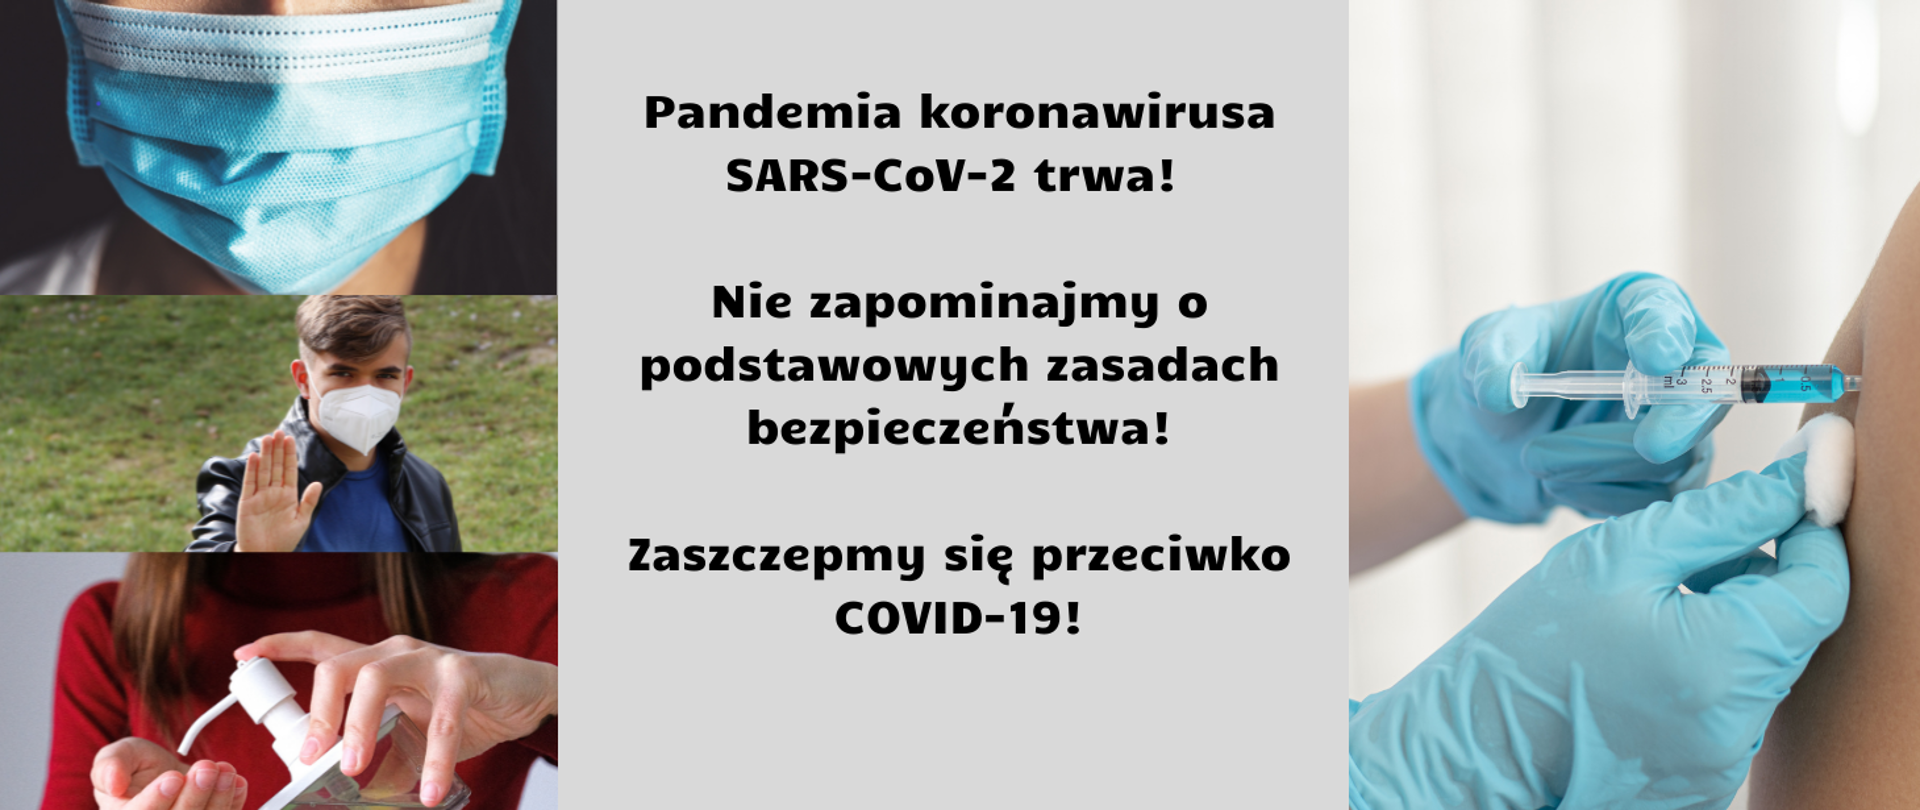 Pandemia koronawirusa SARS-CoV-2 trwa!
Nie zapominajmy o podstawowych zasadach bezpieczeństwa!
Zaszczepmy się przeciwko COVID-19!